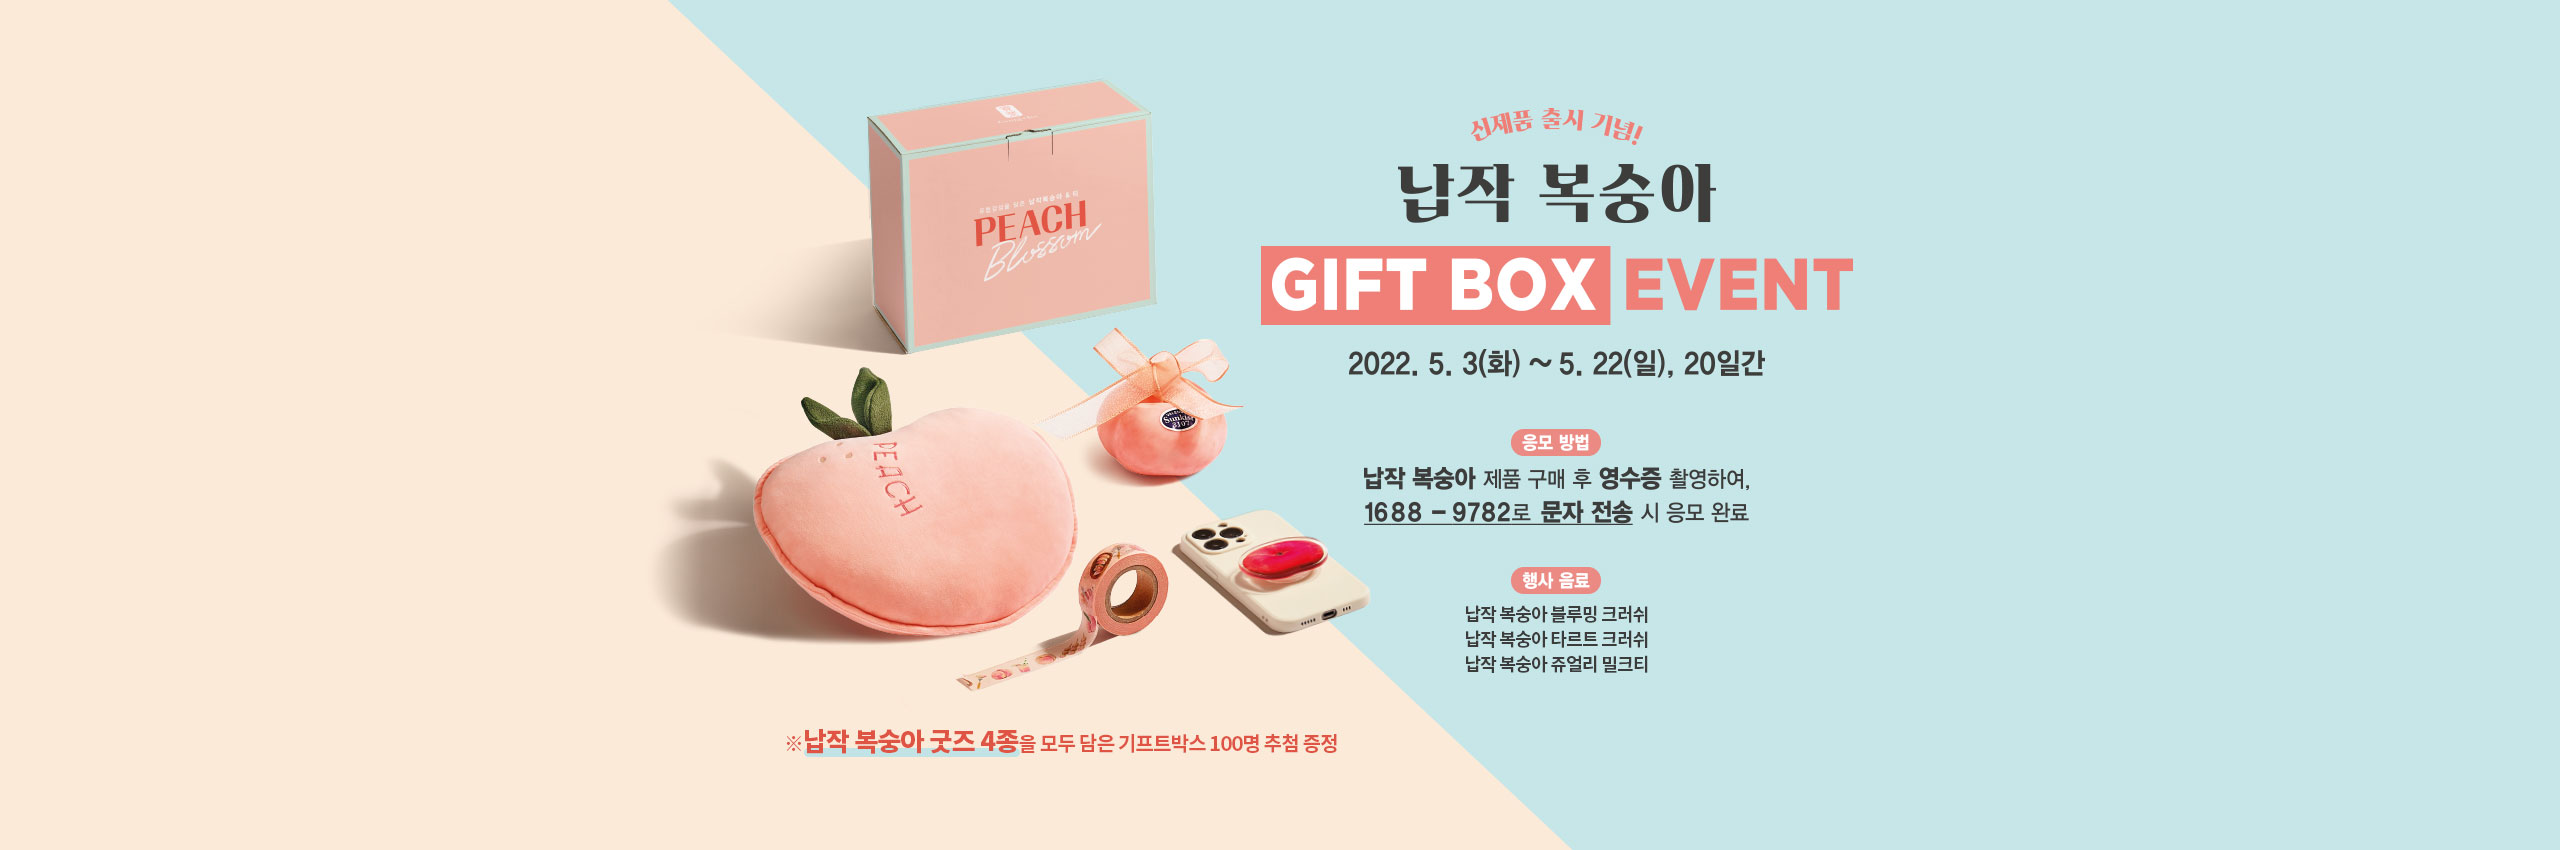 납작 복숭아 신제품 출시 기념! GIFT BOX EVENT